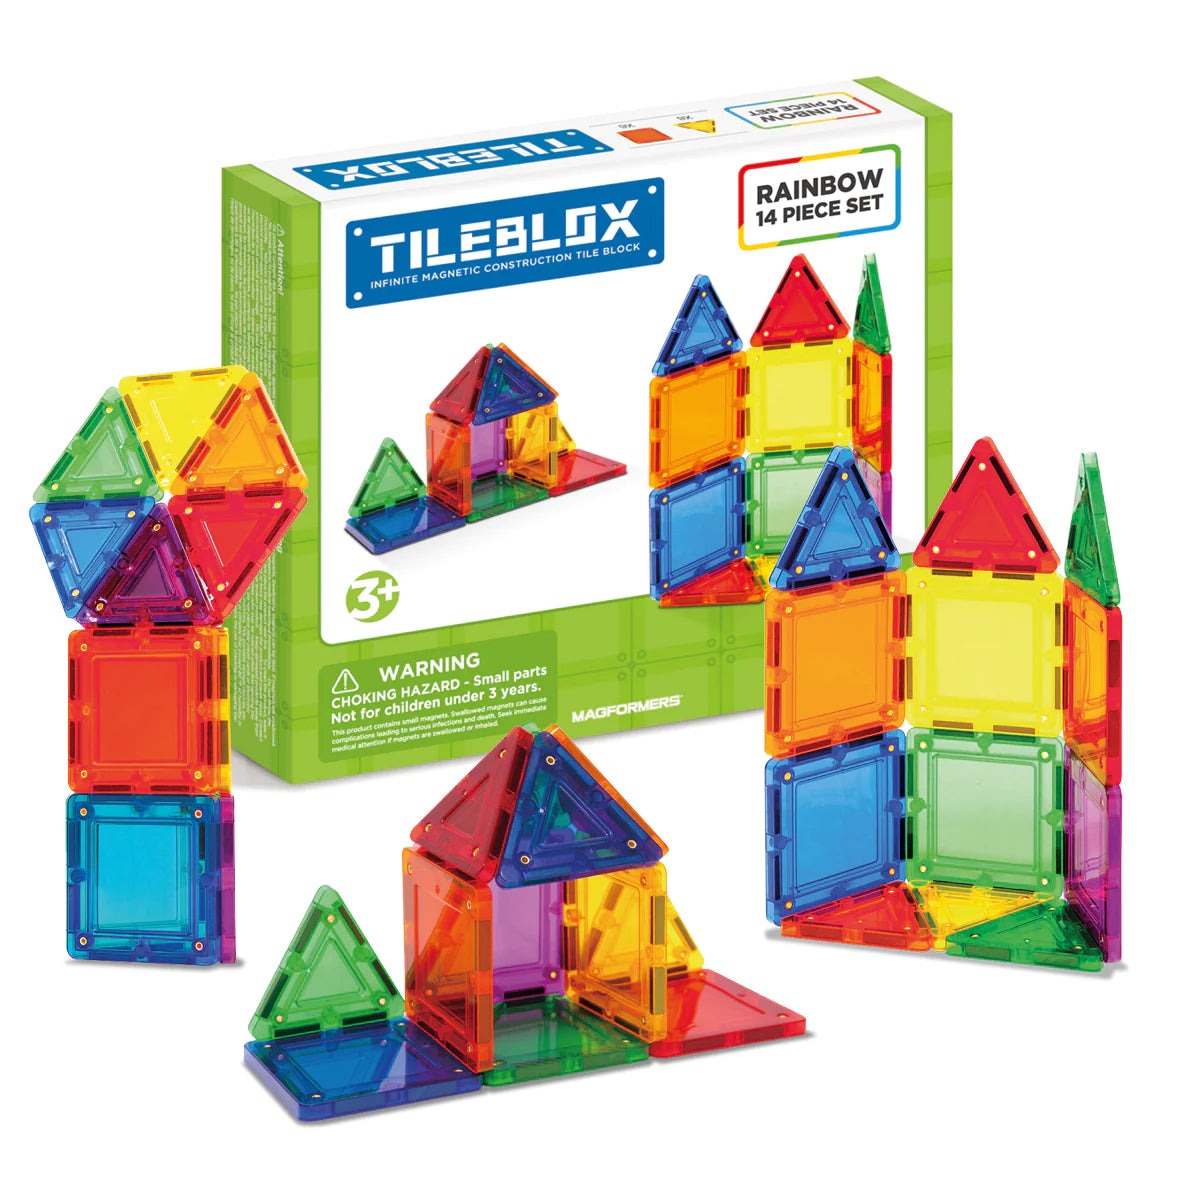 Tileblox 14pc Set